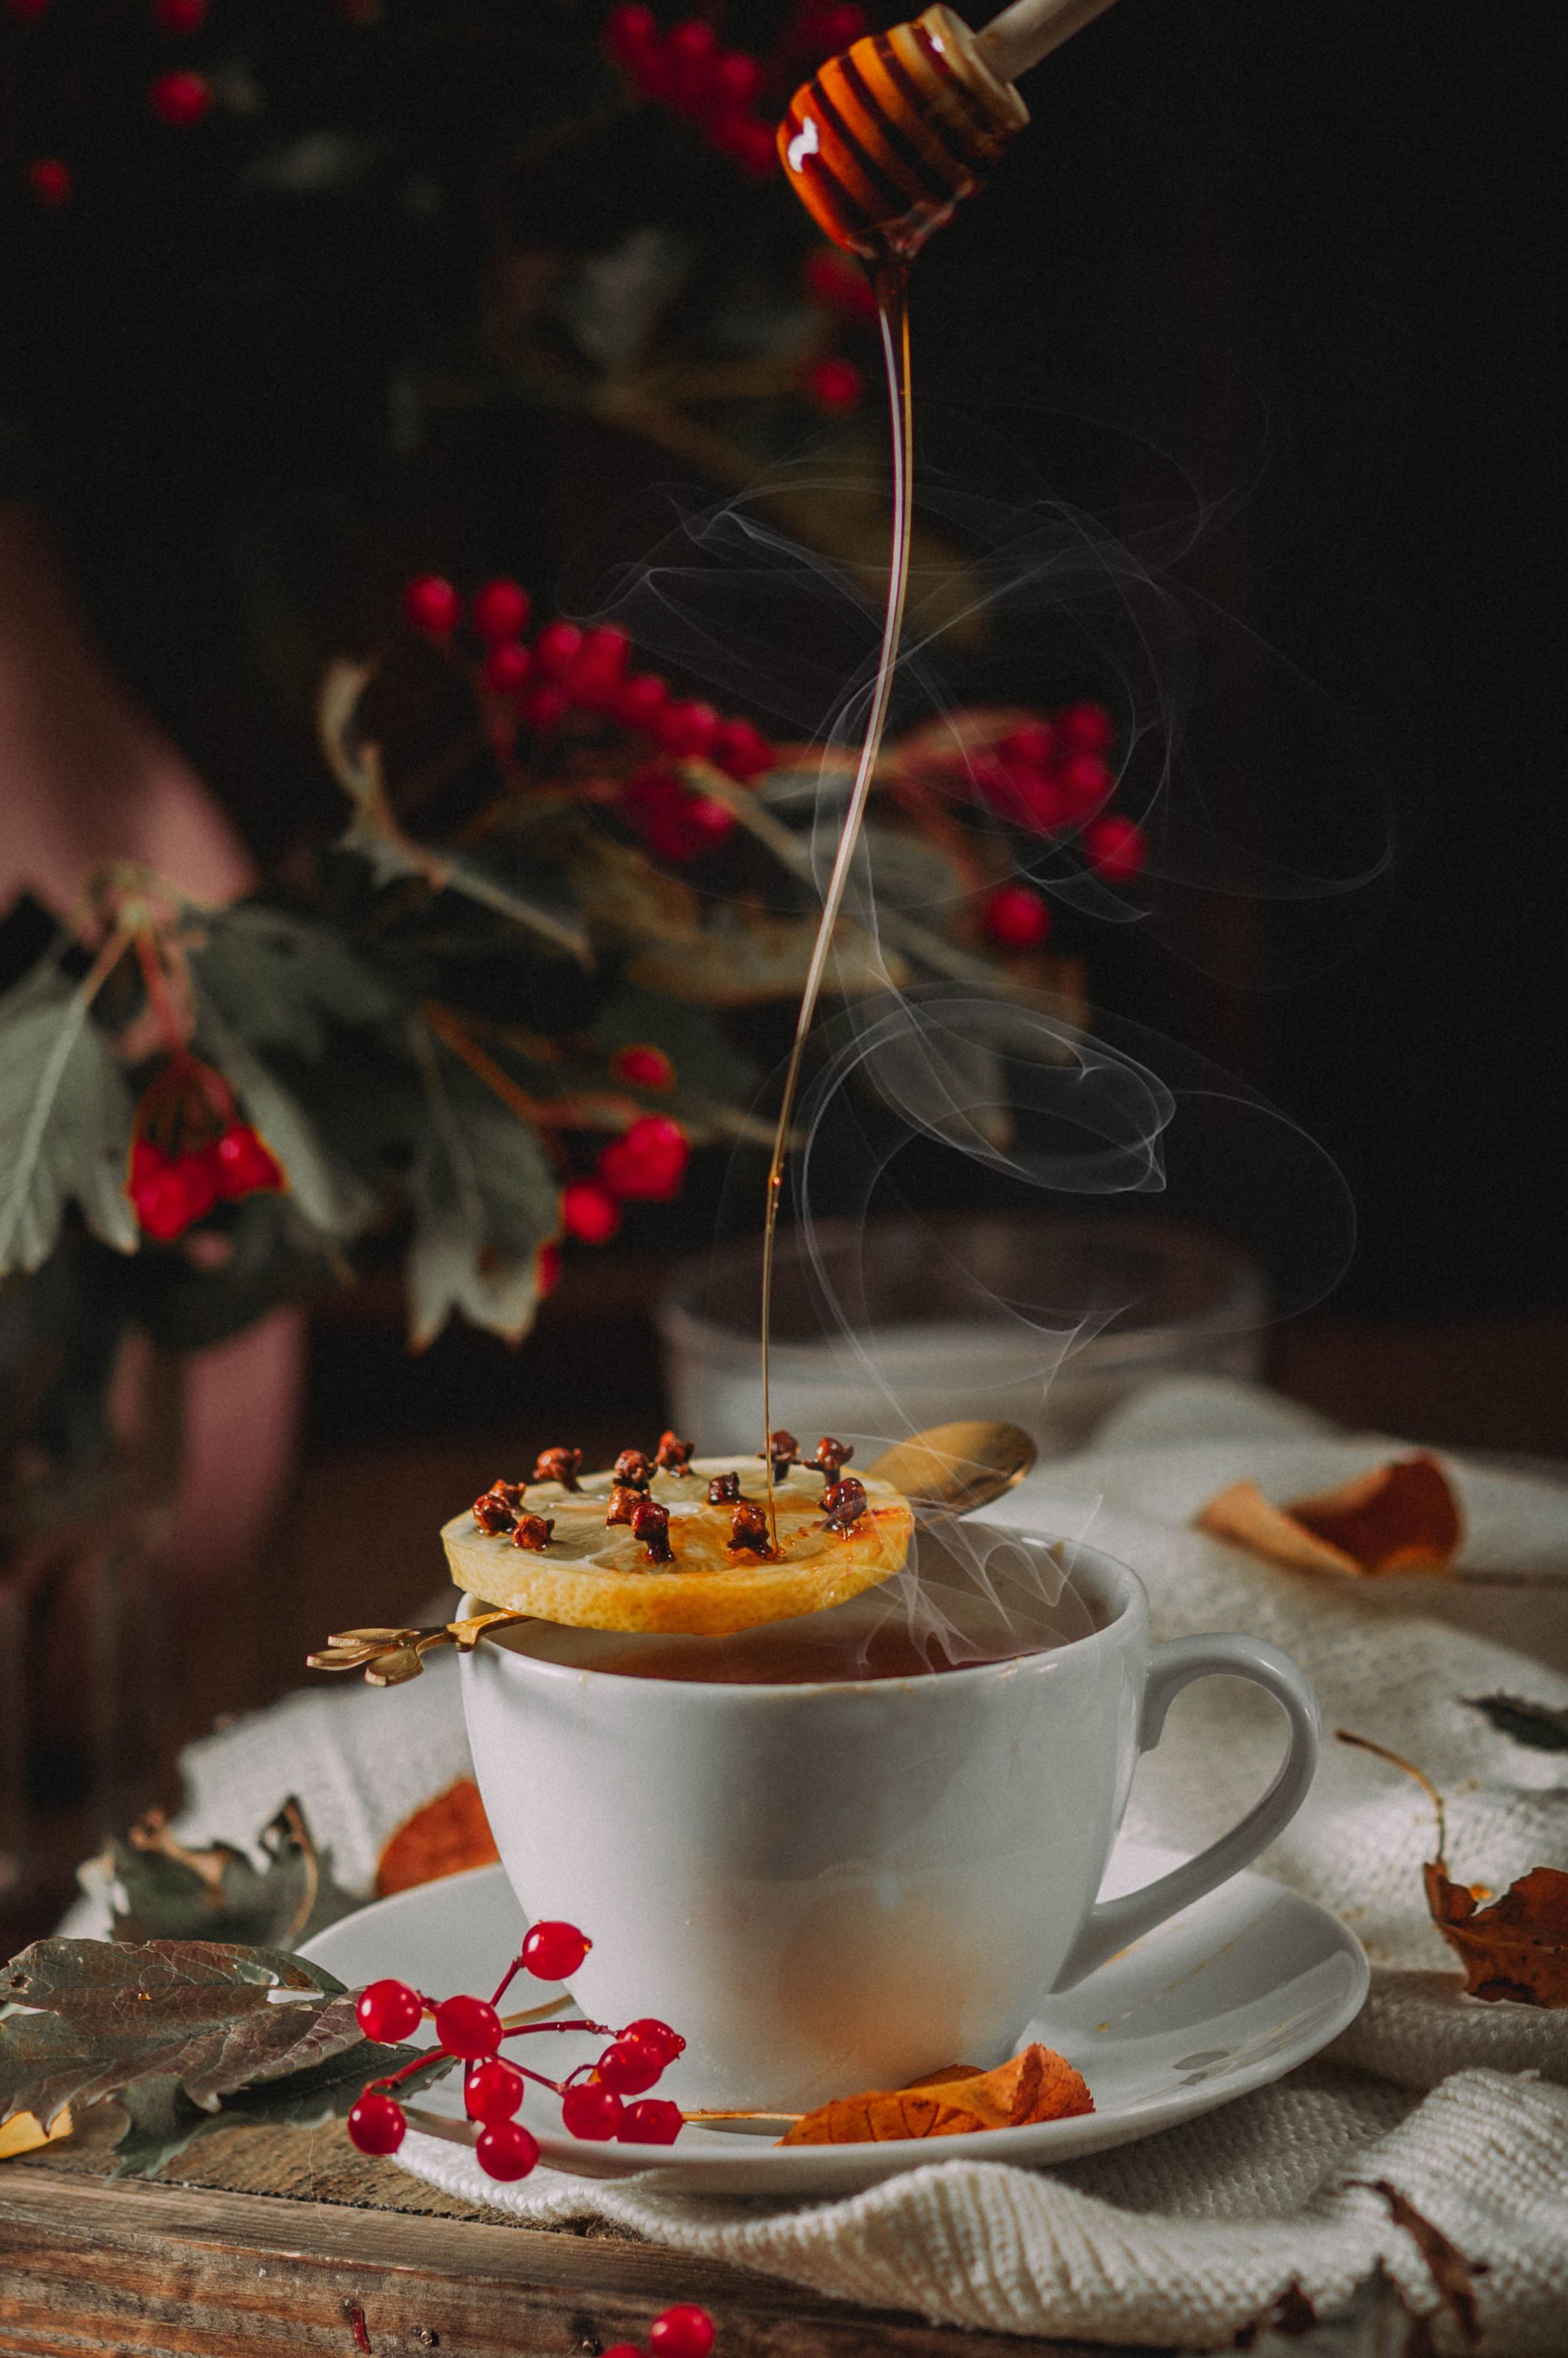 осень, чай, мед, натюрморт, фуд фото, Anna Makarenkova